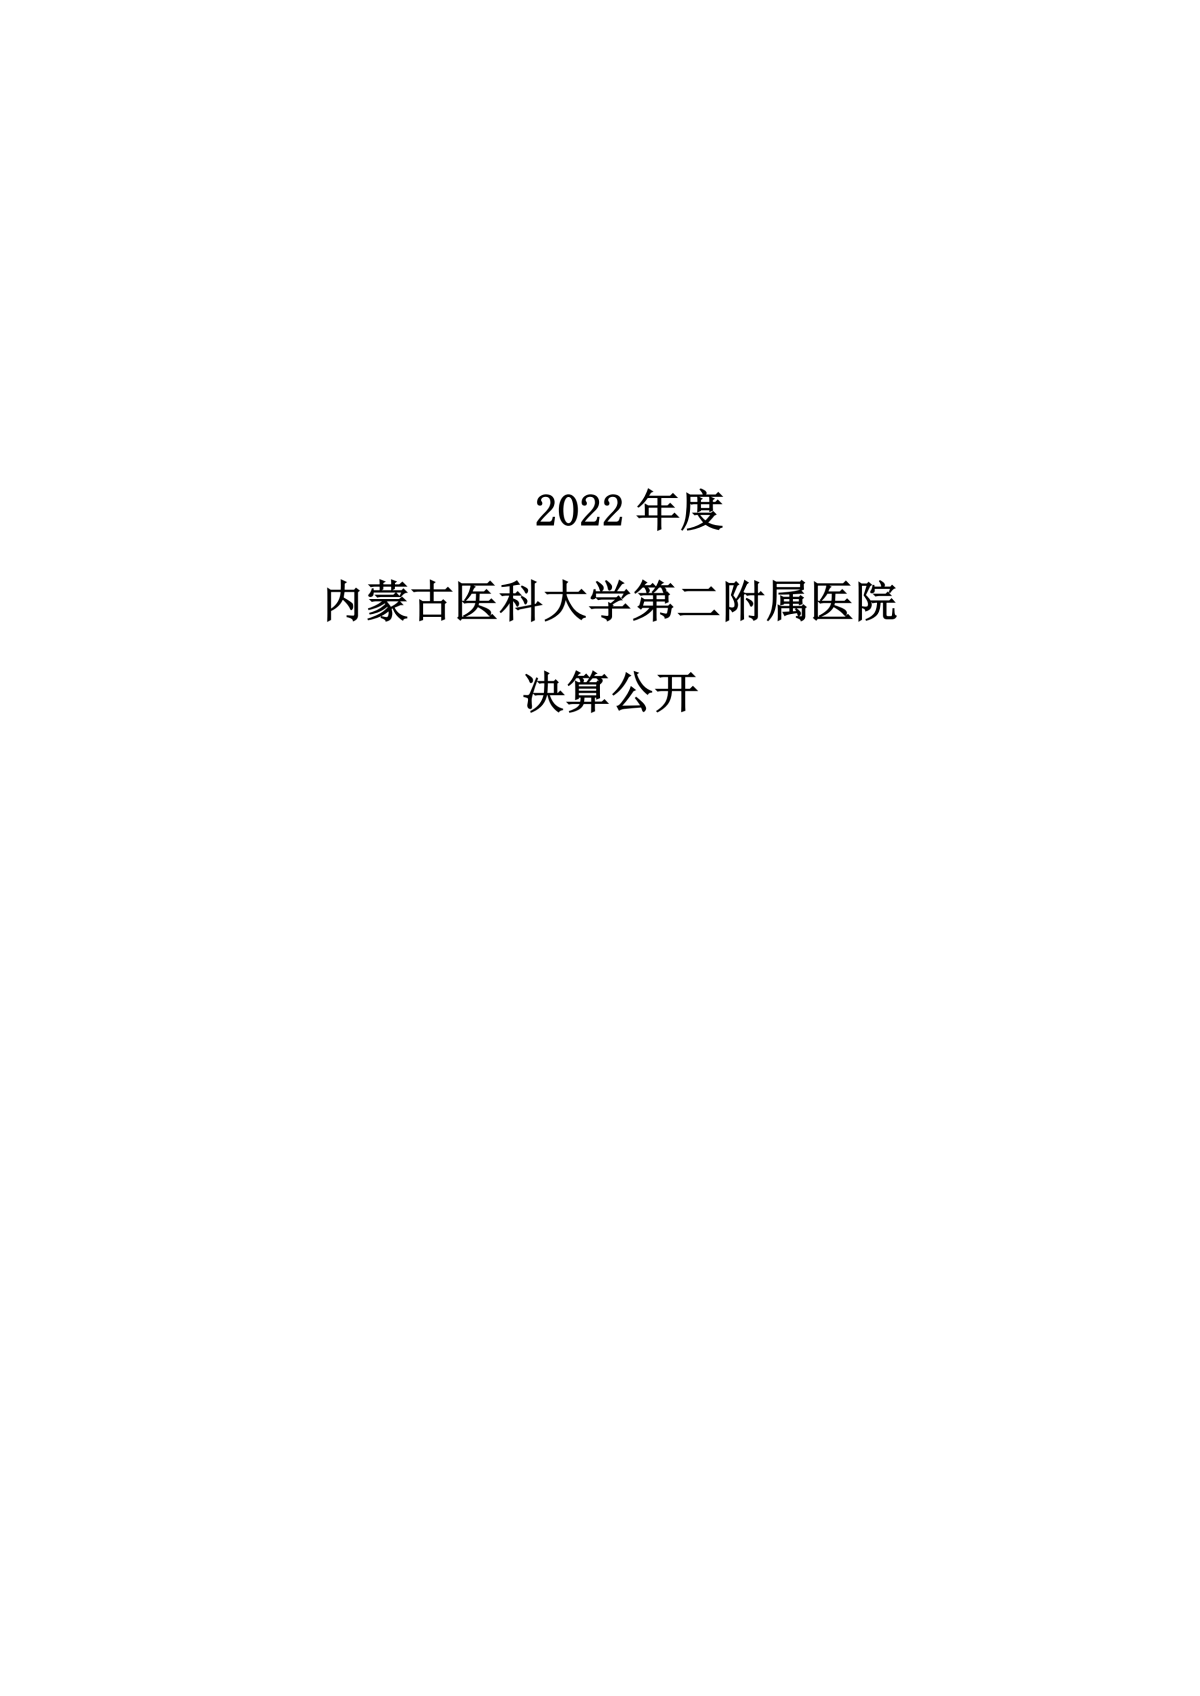 2022年度银河yh8858com公开报告_00.png